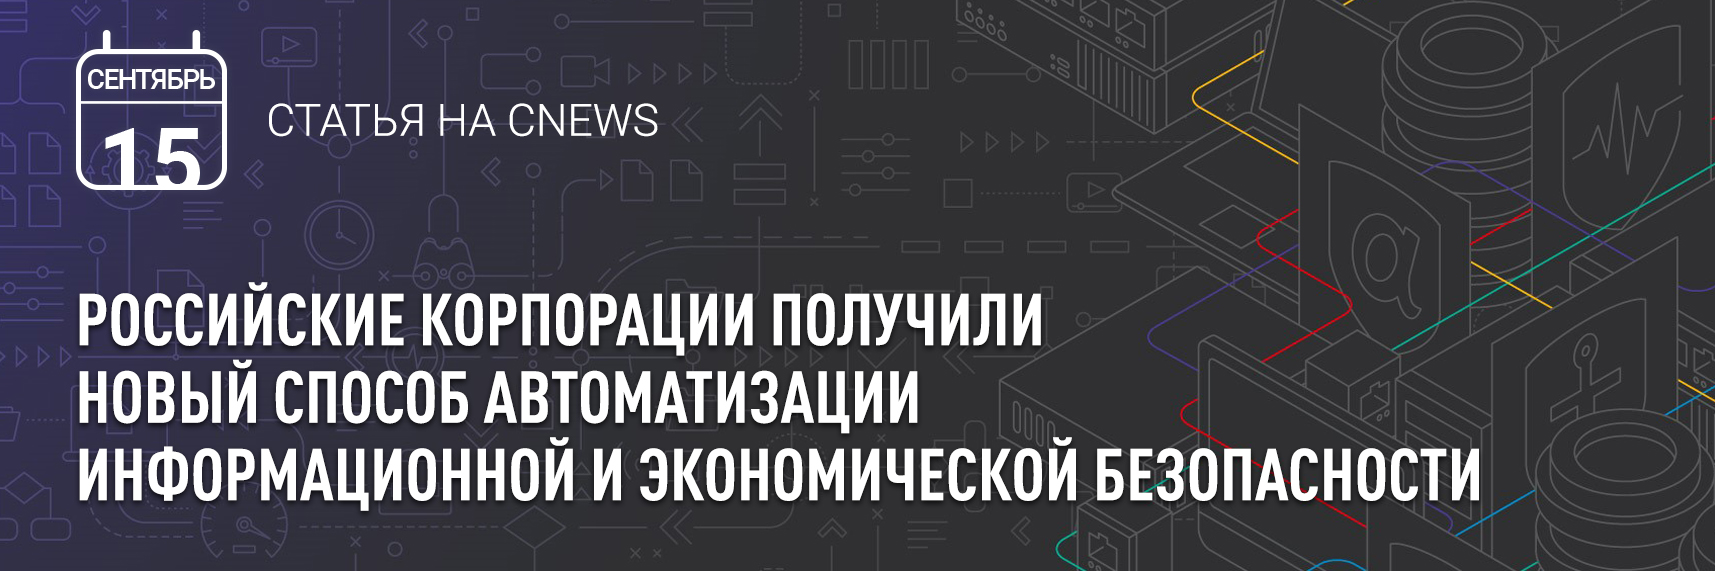 [CNEWS] Российские корпорации получили новый способ автоматизации информационной и экономической безопасности